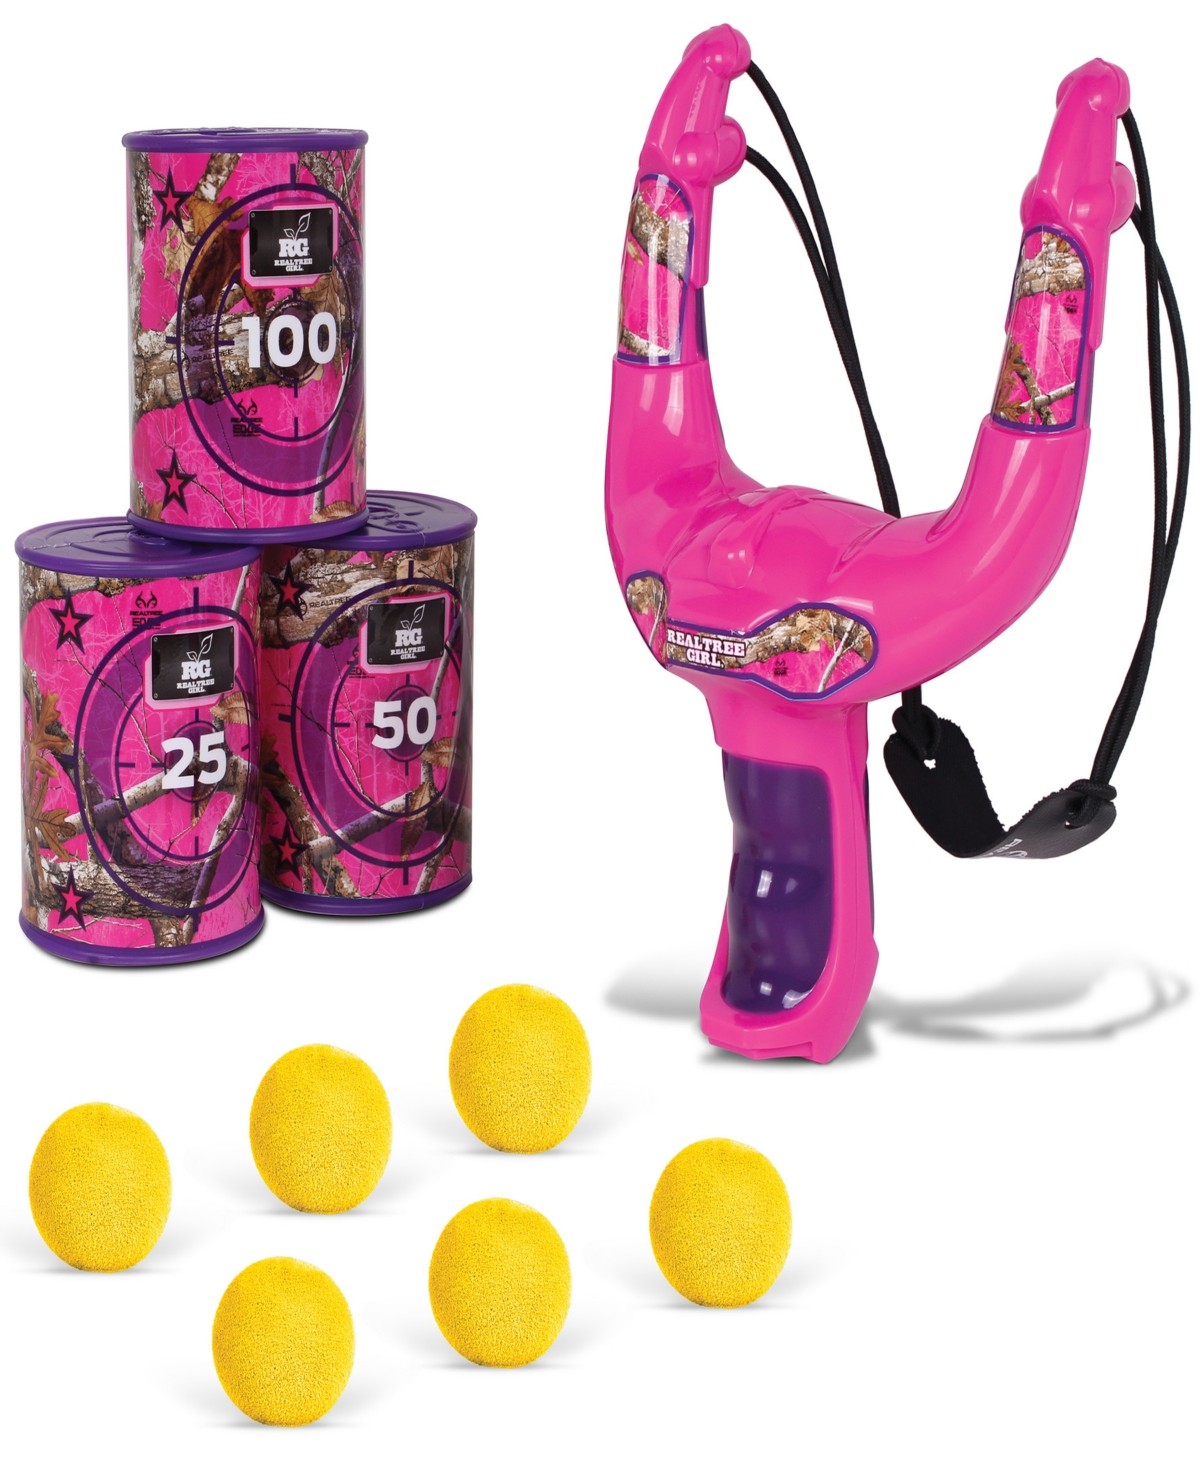 Realtree Nkok Handheld Slingshot Set Pink 25038 Includes 6 Foam Balls 3 Can Targets, Toy Slingshot Shoots Upt In Multi